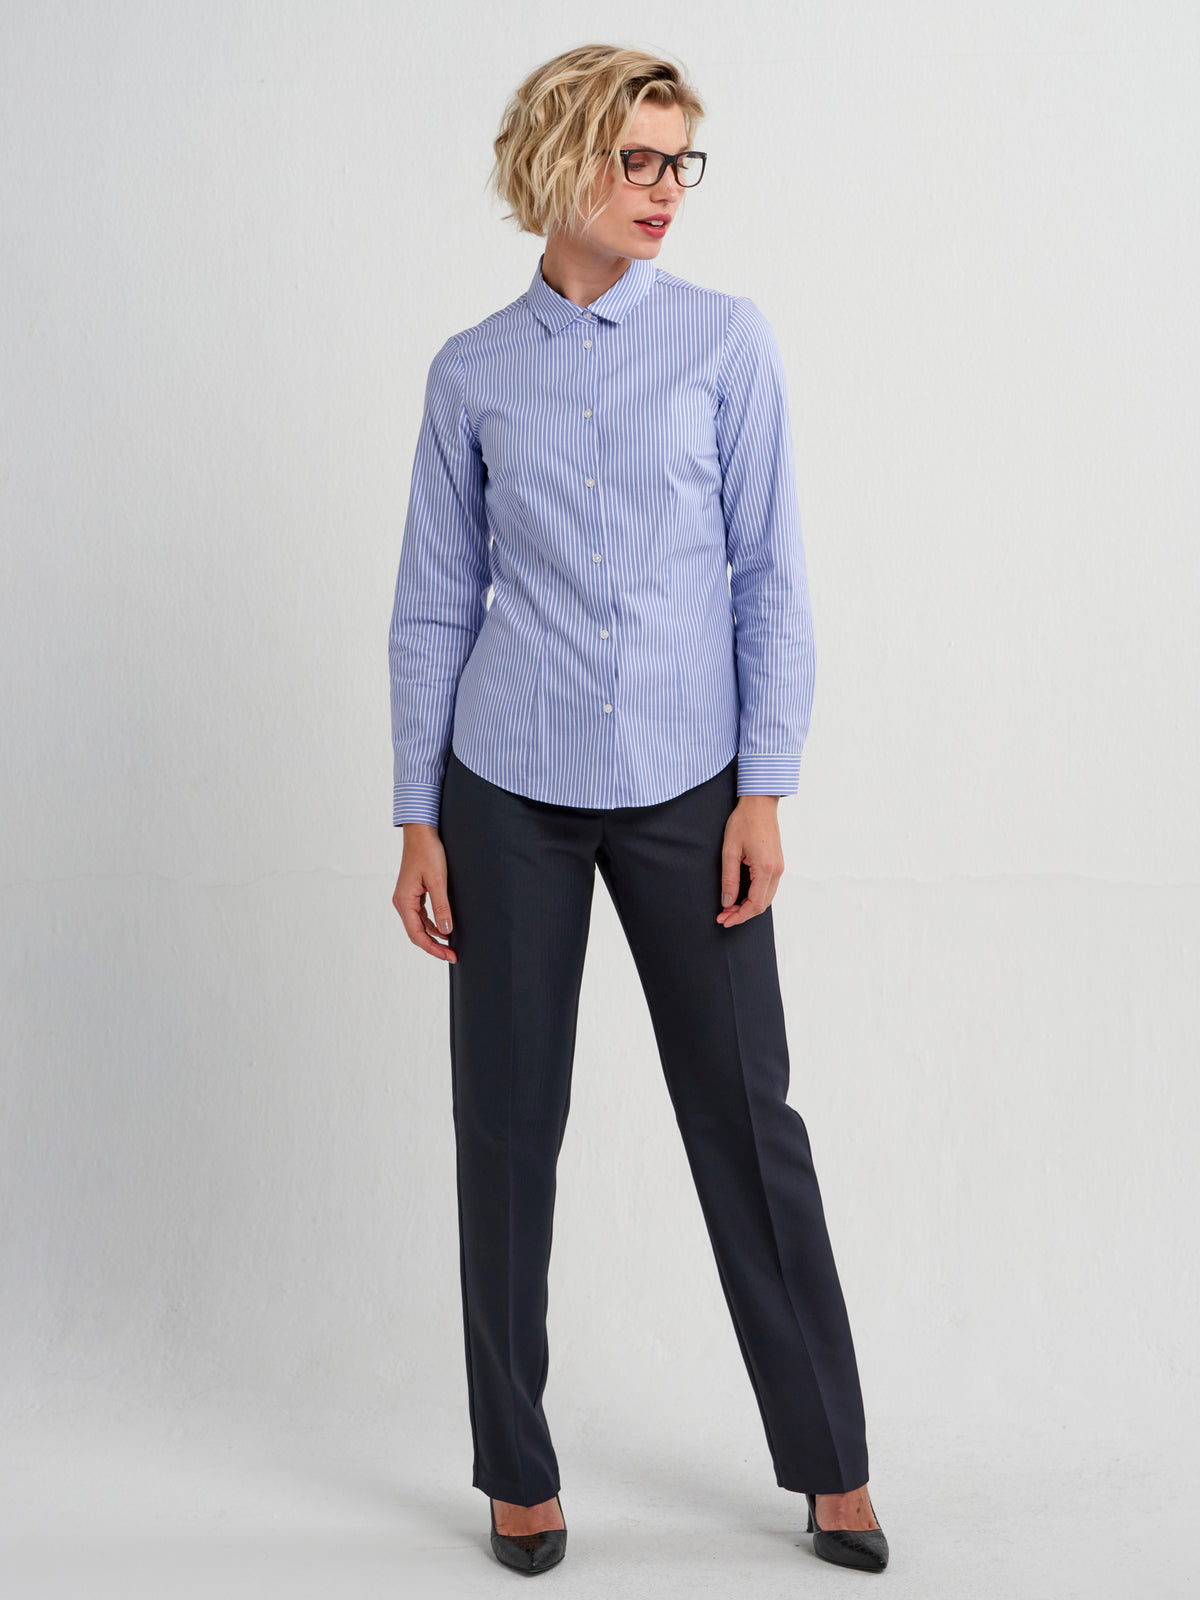 Karabo cotton shirt - blue stripe